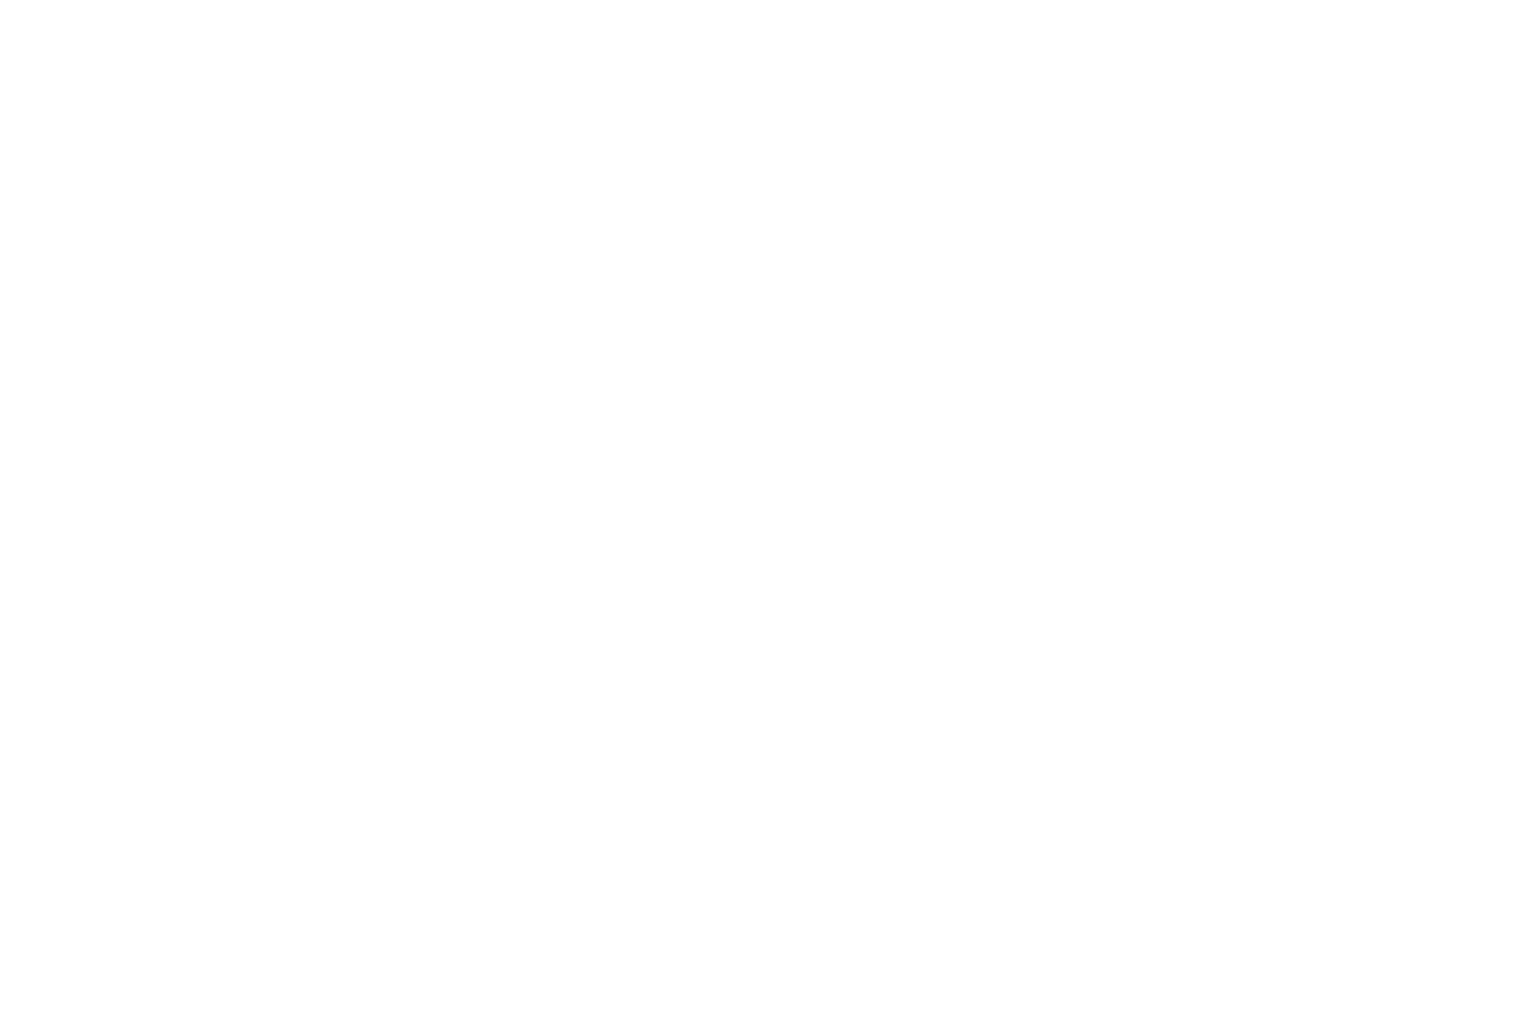 Britvic logo pour fonds sombres (PNG transparent)